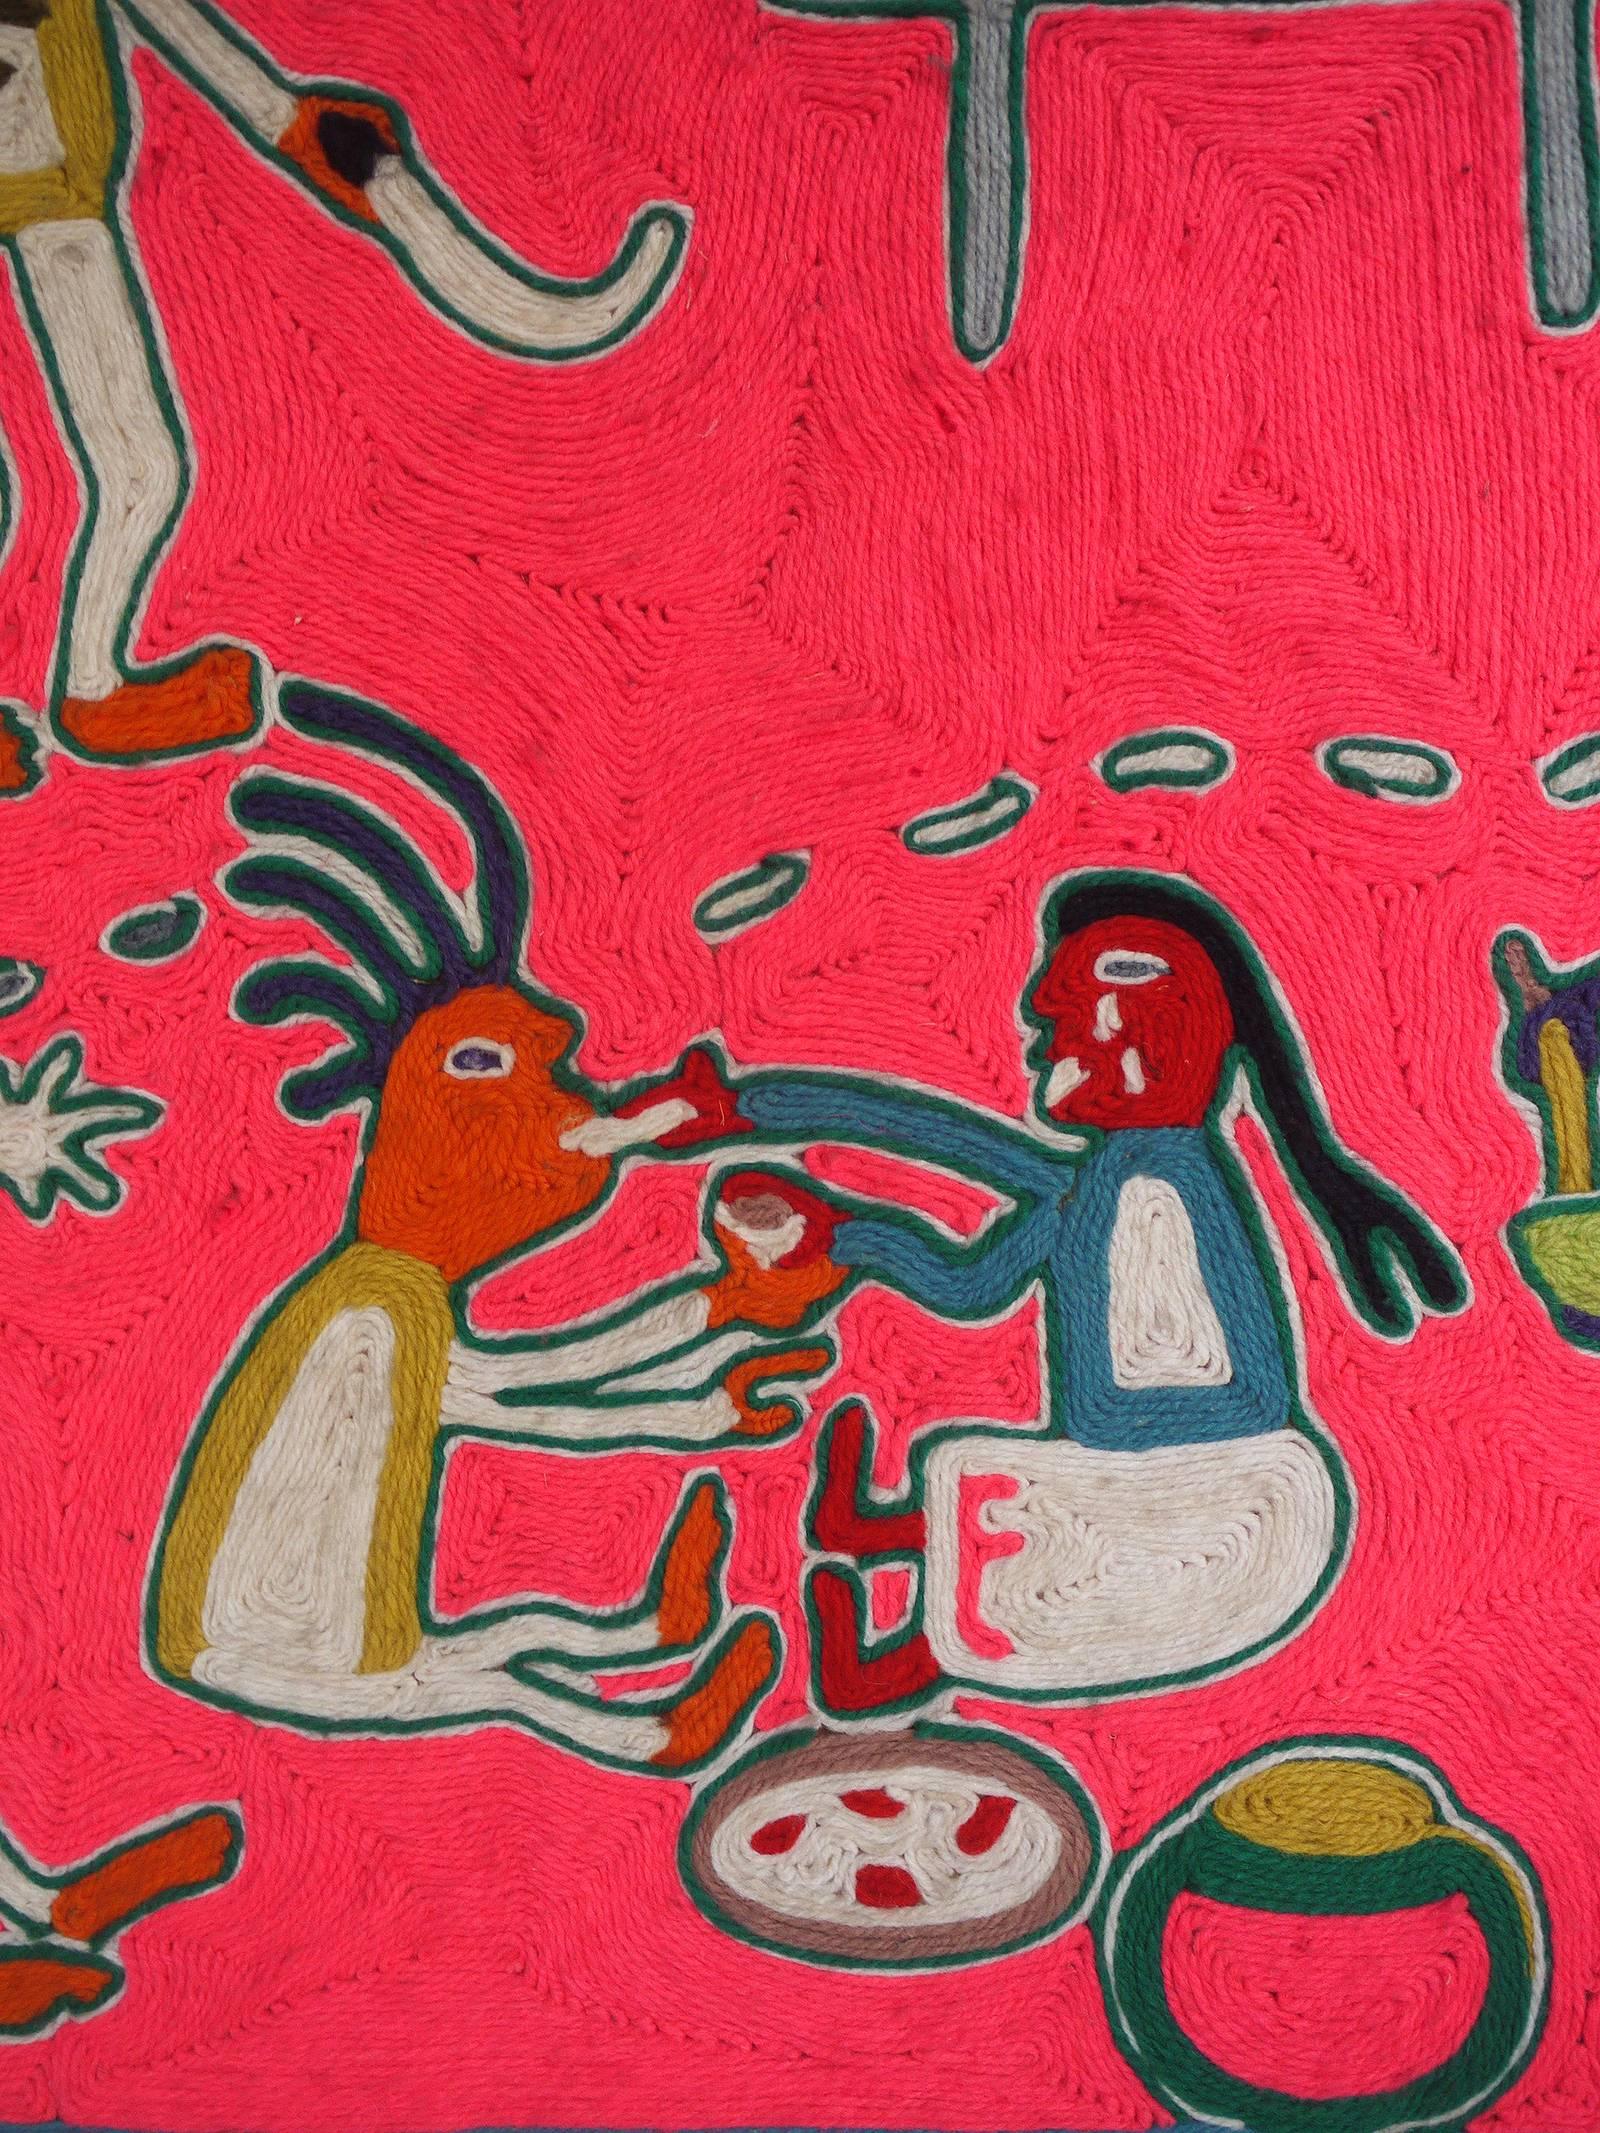 Mexikanische Nierika-Garnmalerei von den Huichol-Indianern. 

Hochzeit::
Mexiko:: 1998. 
Die Autorin ist Emeteria Rios Martinez. 
Braut und Bräutigam bei der Zubereitung der Mahlzeit. Links der Bräutigam mit Machete und Brennholz. Unten auf dem Bild